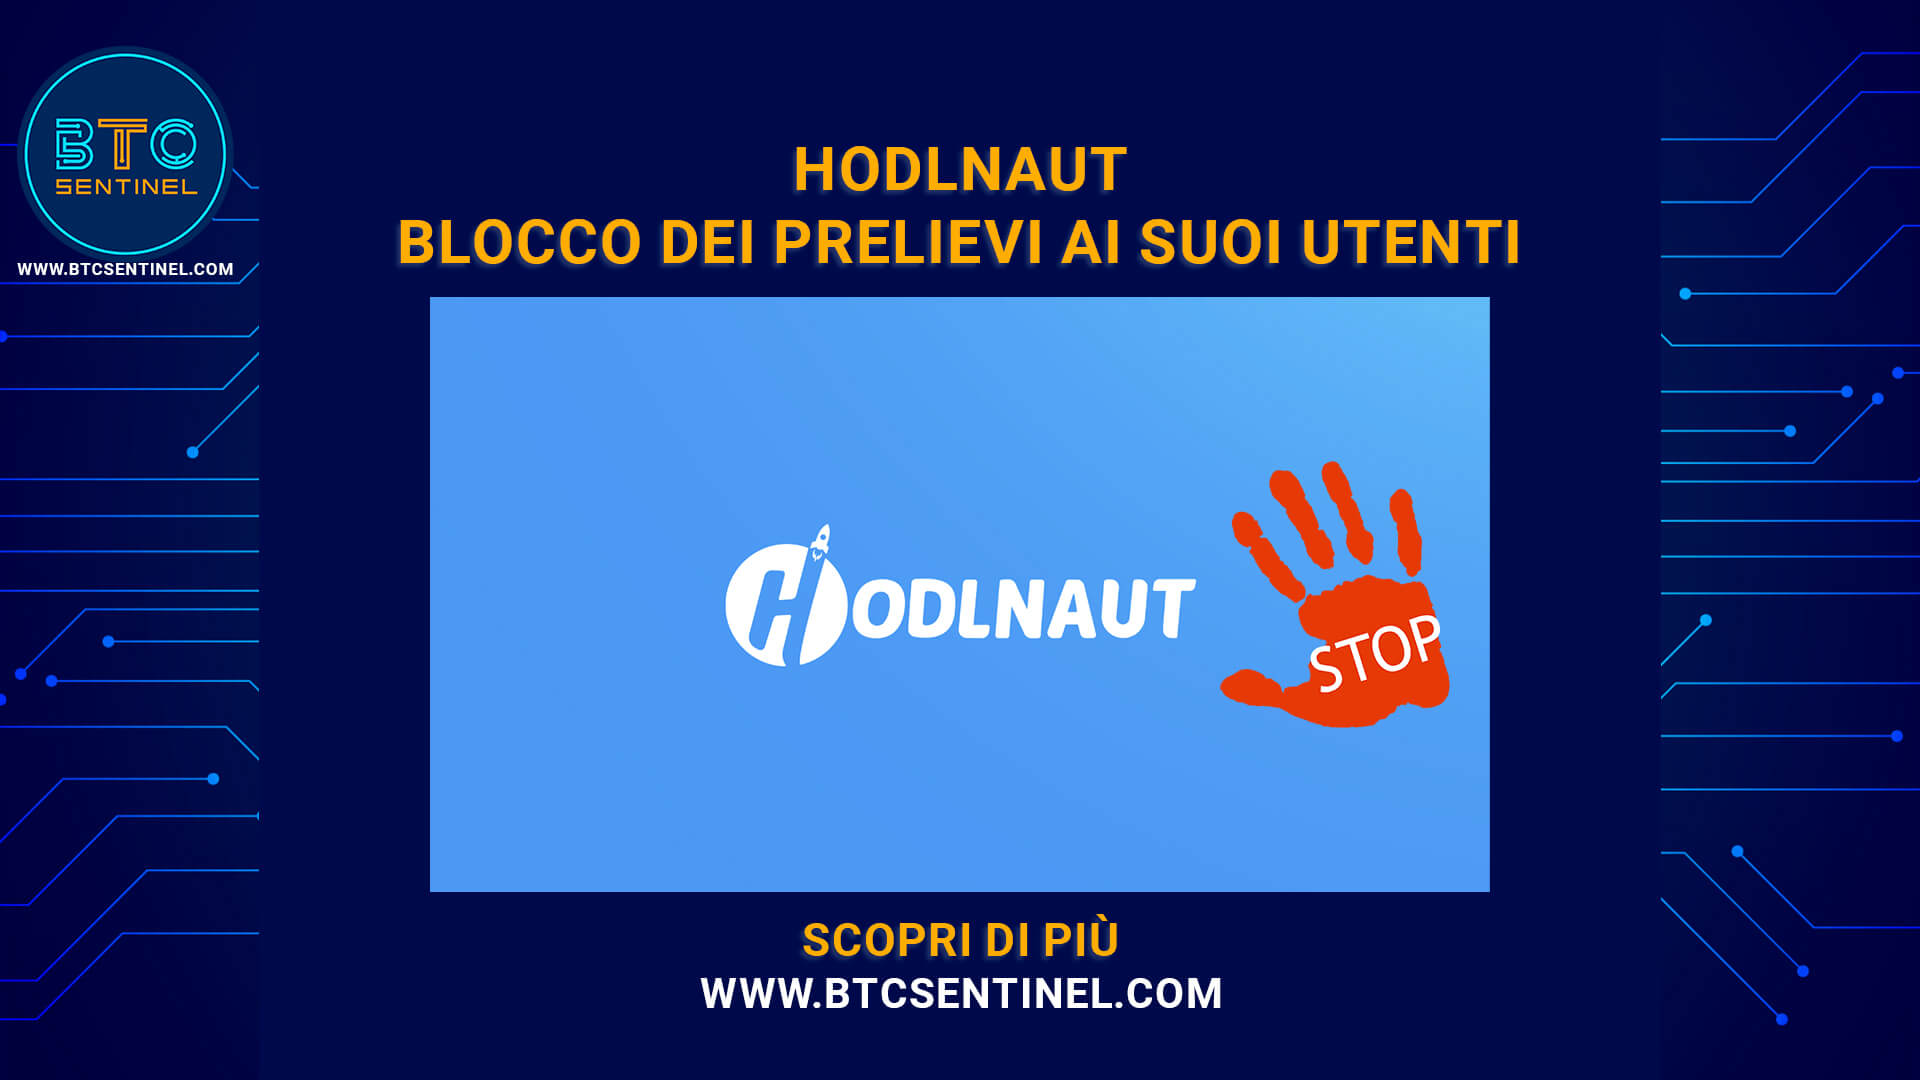 Hodlnaut annuncia il blocco dei prelievi ai suoi utenti: ecco il motivo